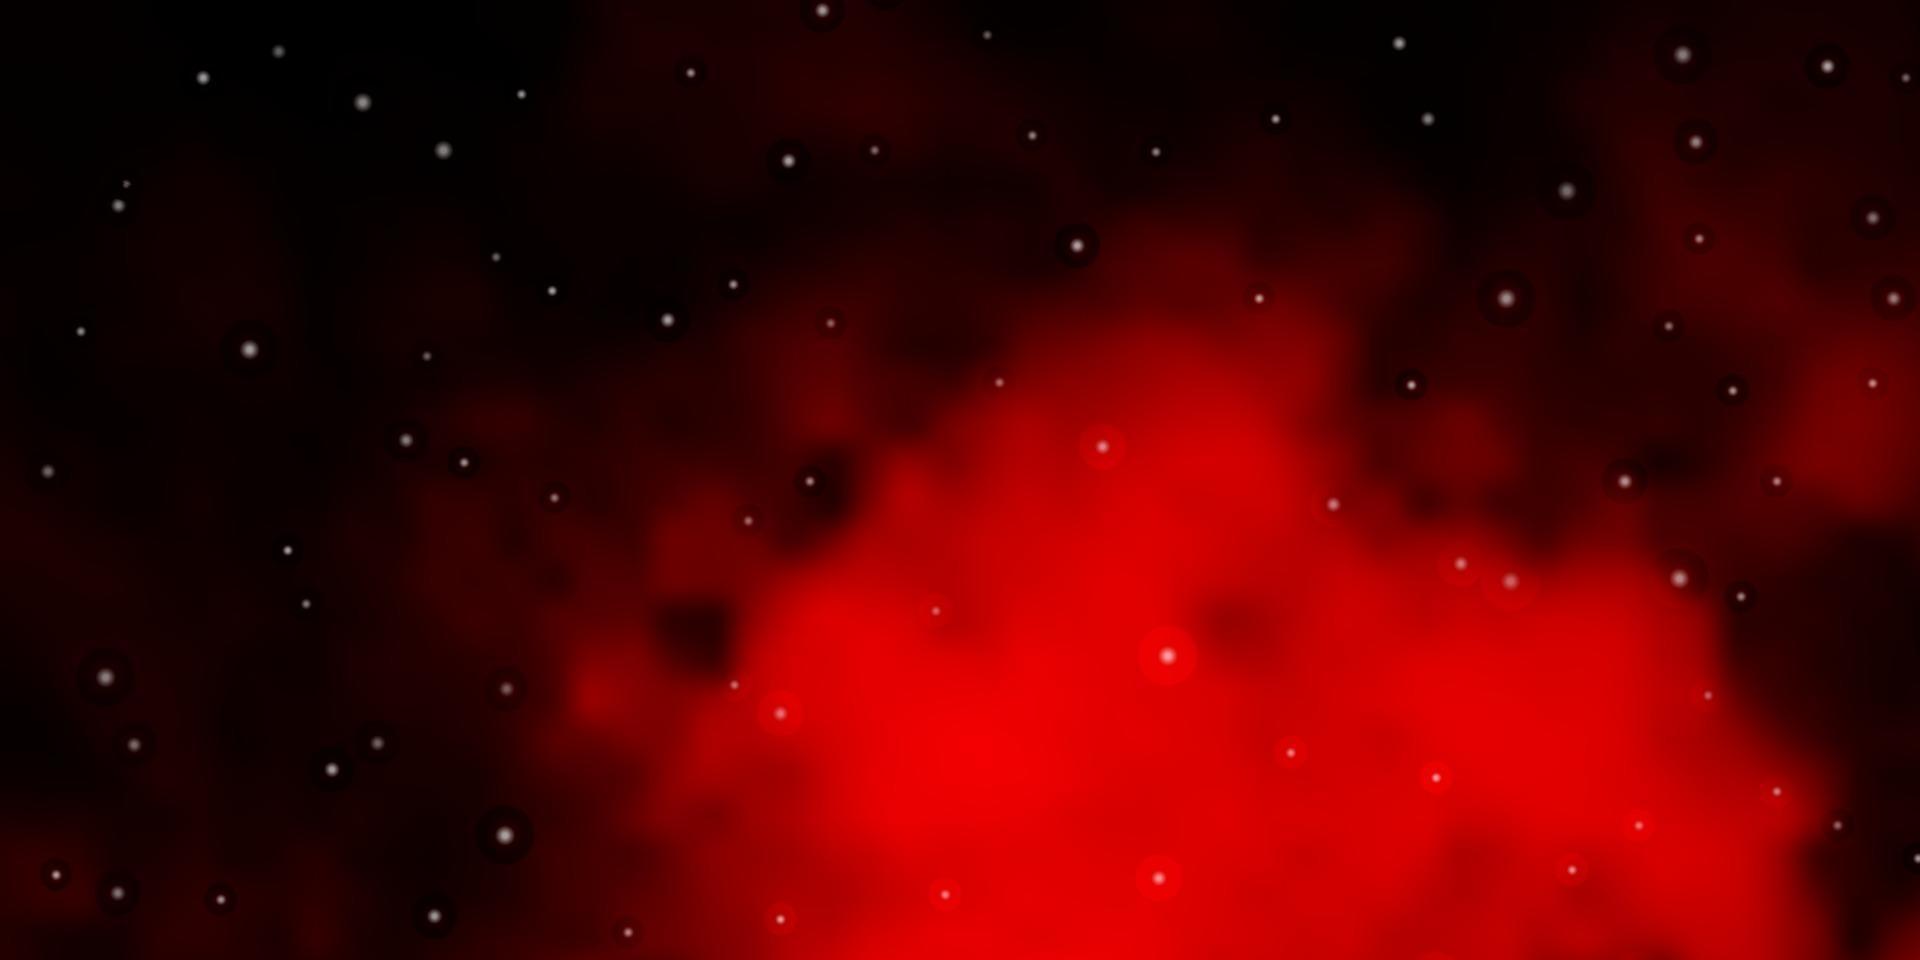 modello vettoriale rosso scuro con stelle astratte.